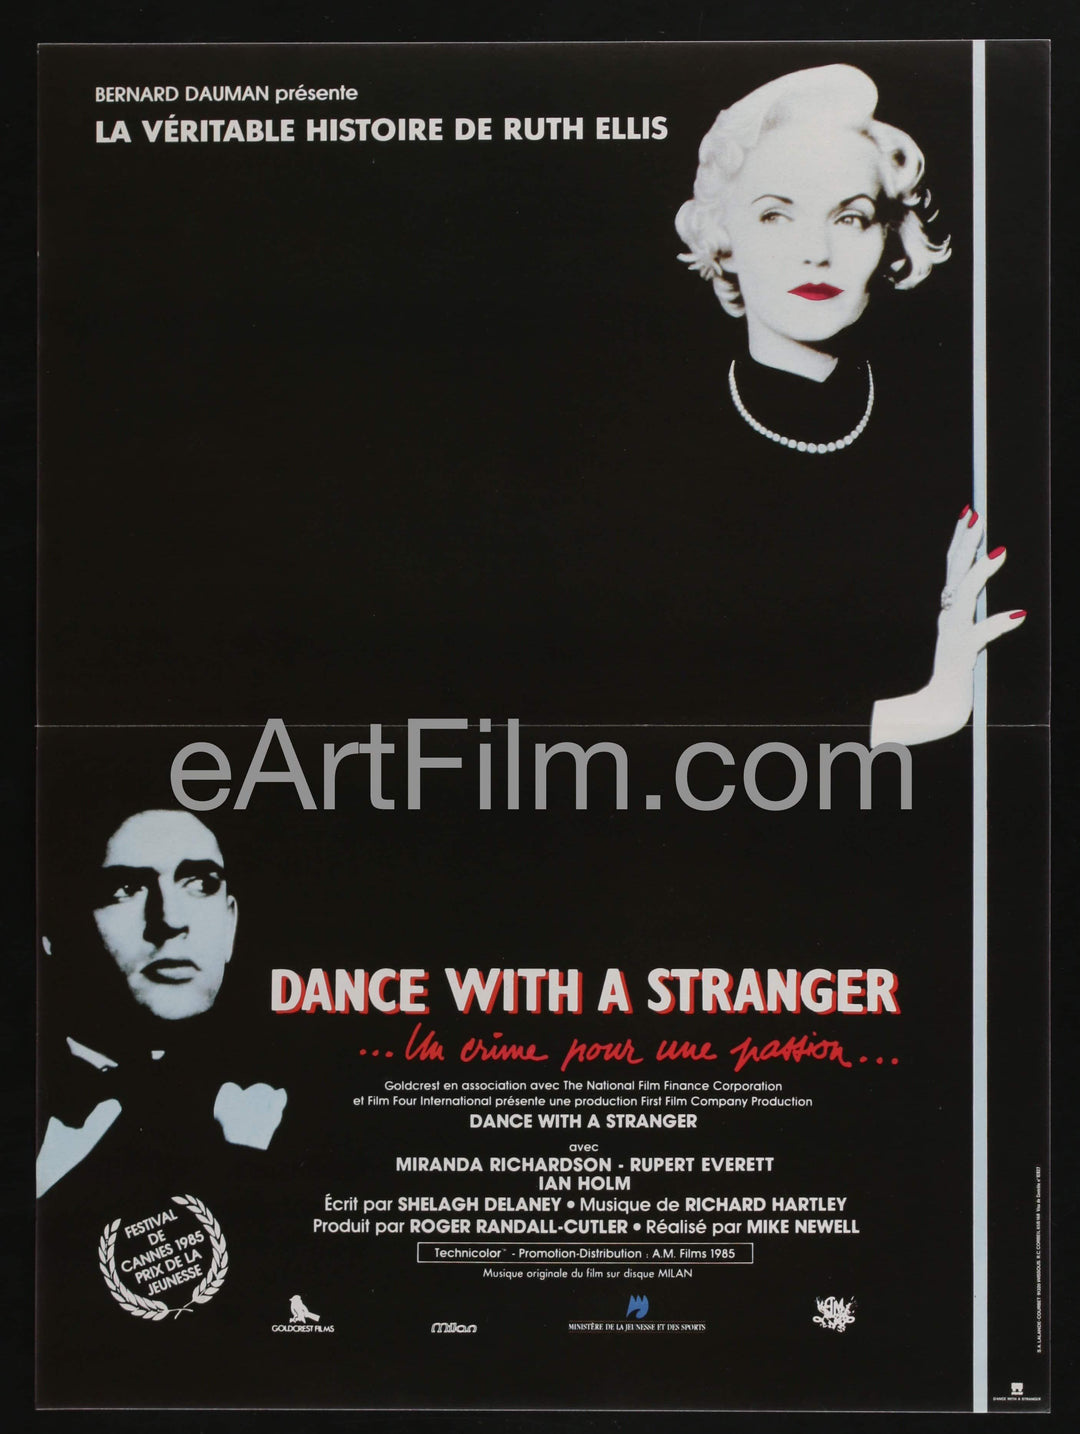 eArtFilm.com French (15"x21") Dance With a Stranger-Miranda Richardson-Rupert Everett-French-1985